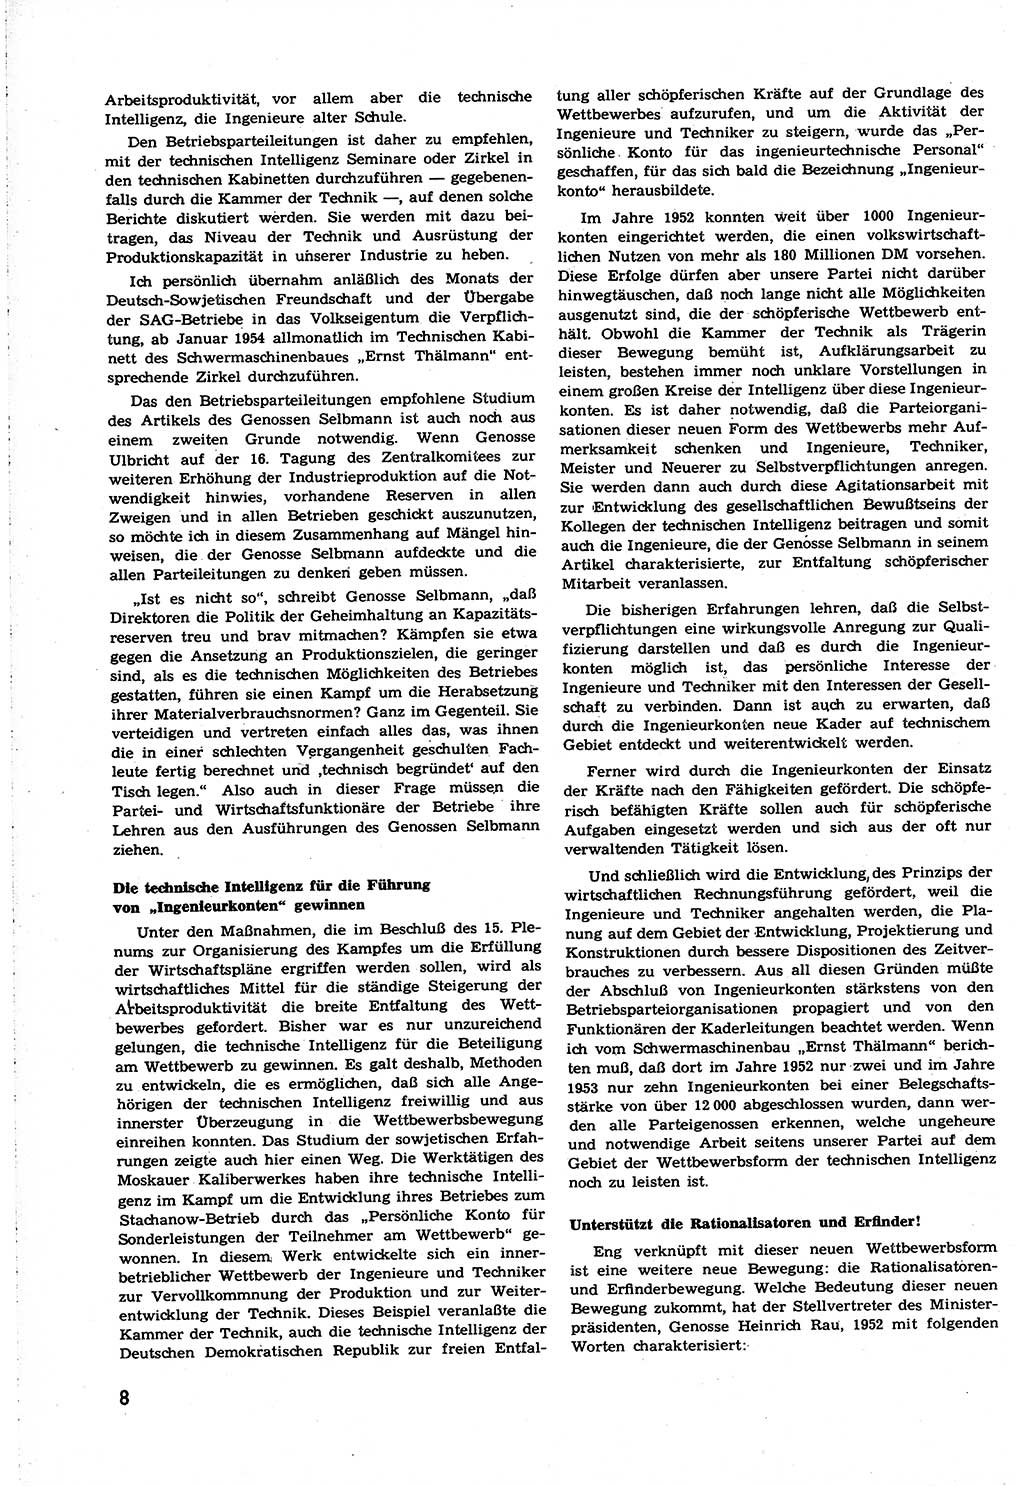 Neuer Weg (NW), Organ des Zentralkomitees (ZK) [Sozialistische Einheitspartei Deutschlands (SED)] für alle Parteiarbeiter, 8. Jahrgang [Deutsche Demokratische Republik (DDR)] 1953, Heft 21/8 (NW ZK SED DDR 1953, H. 21/8)